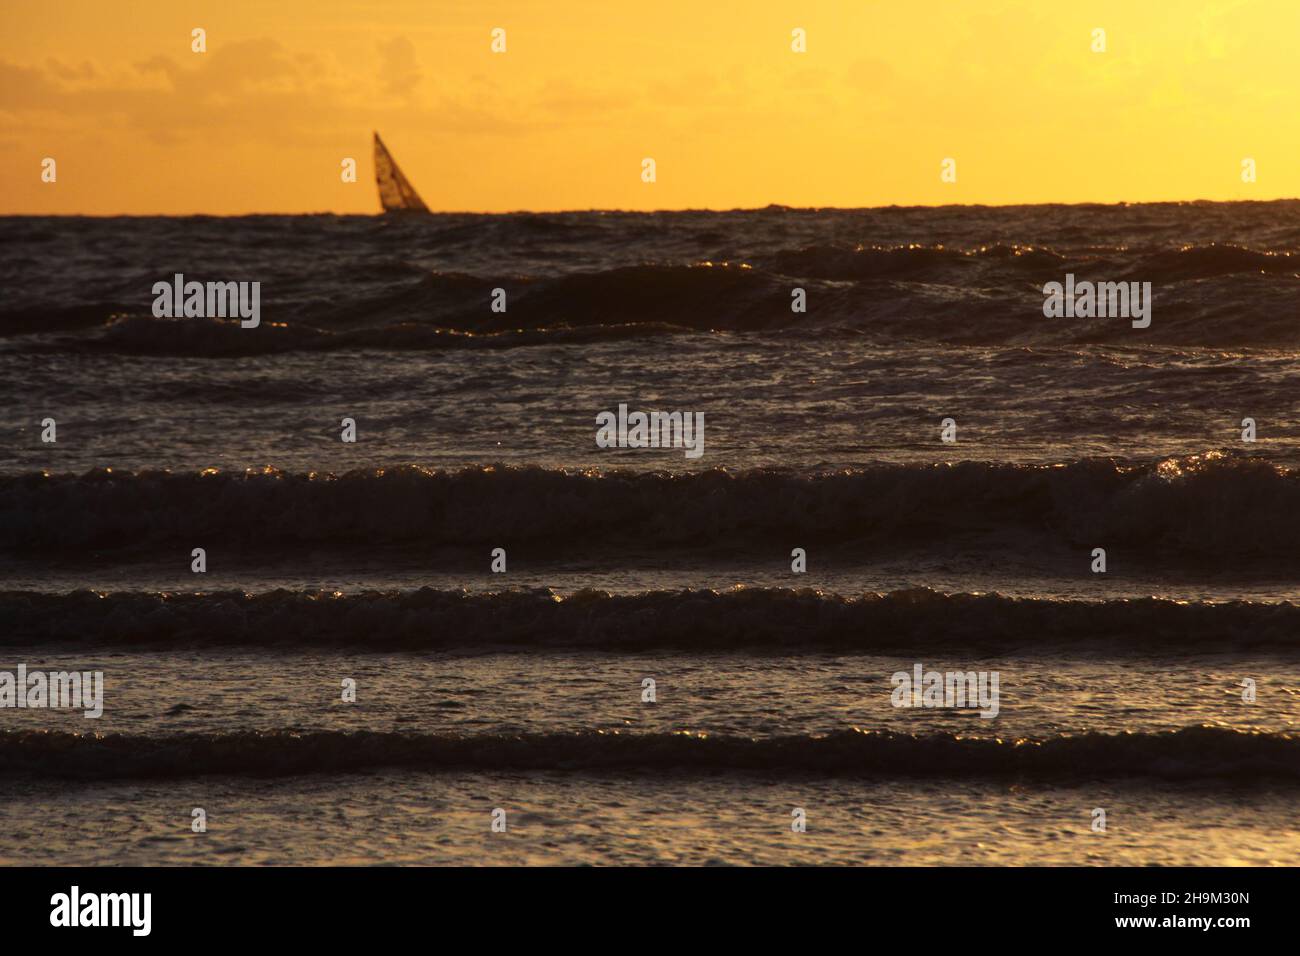 Das Muster der Wellen im Meer während des Sonnenuntergangs am Strand. Goldene Stunde. Stockfoto